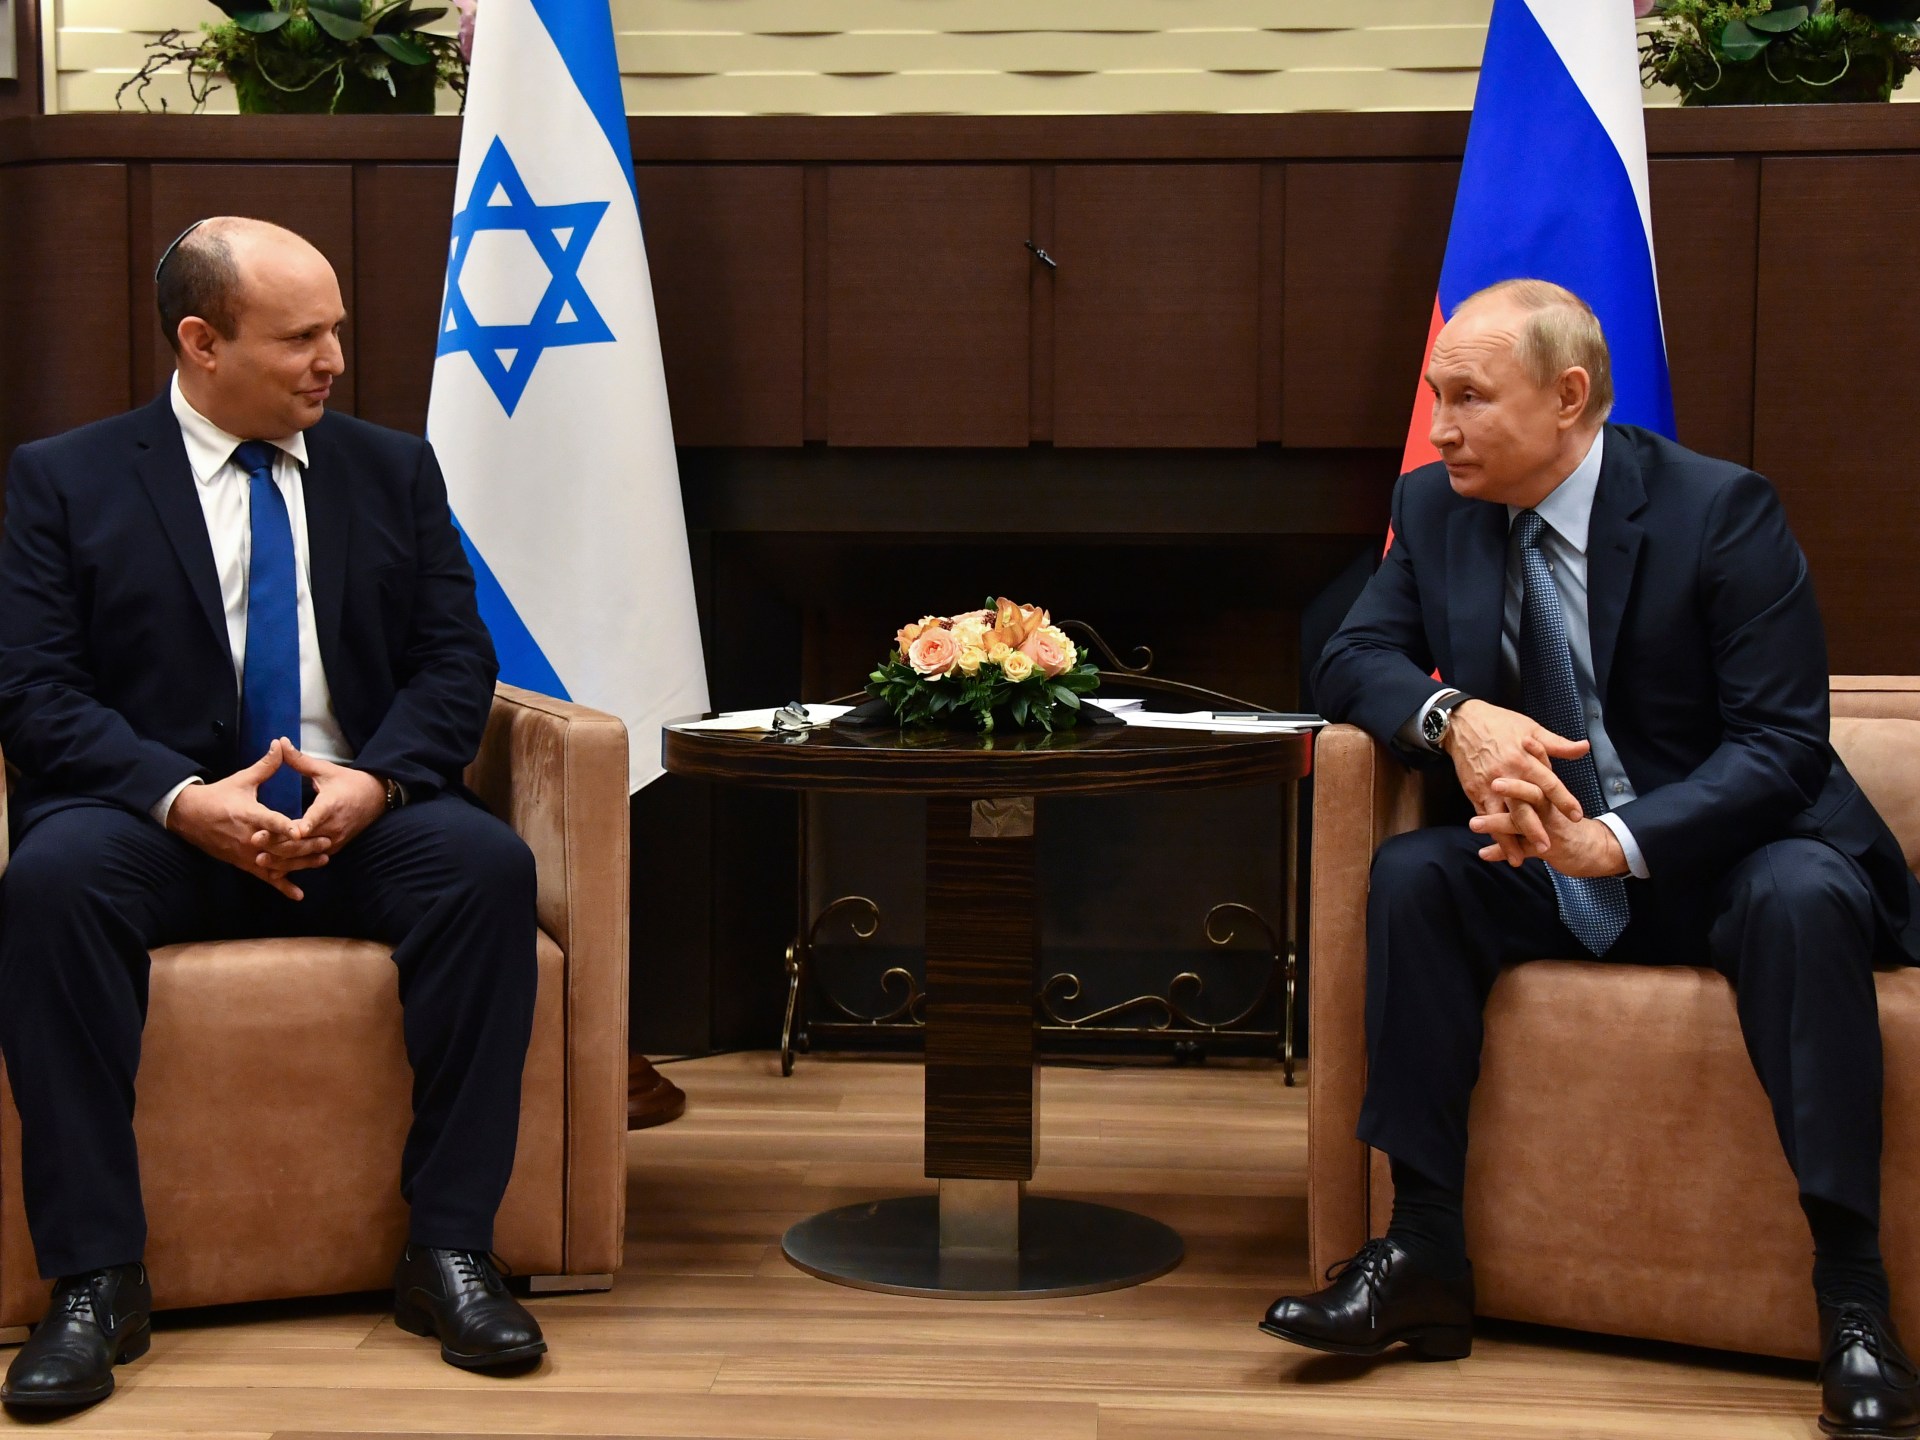 Putin promised not to kill Zelenskyy: Ex-Israeli PM – Al Jazeera English